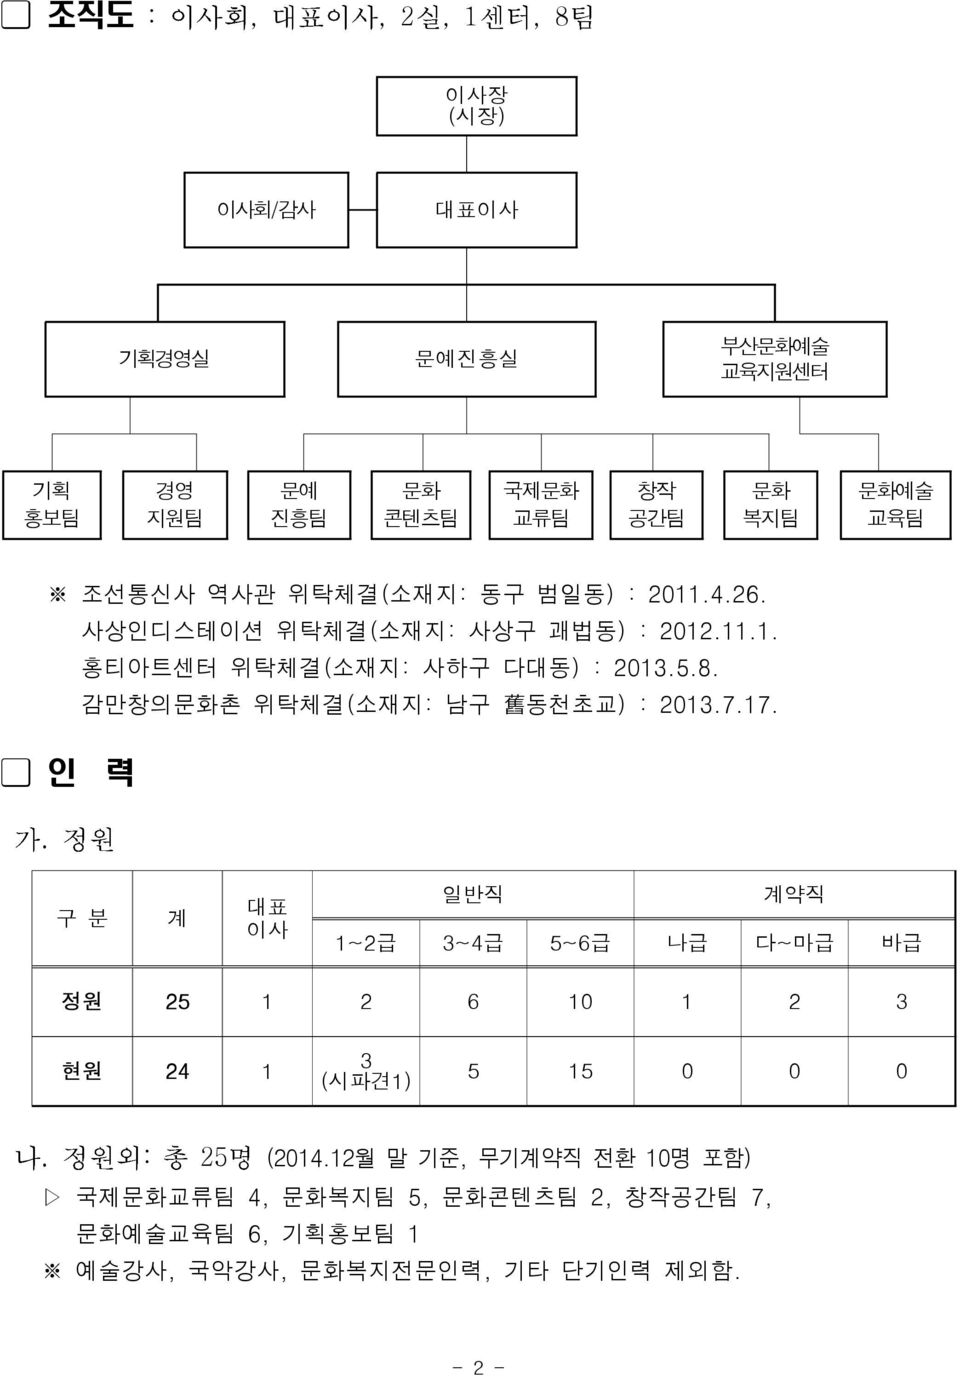 감만창의문화촌 위탁체결( 소재지: 남구 舊 동천초교) : 2013.7.17. 력.